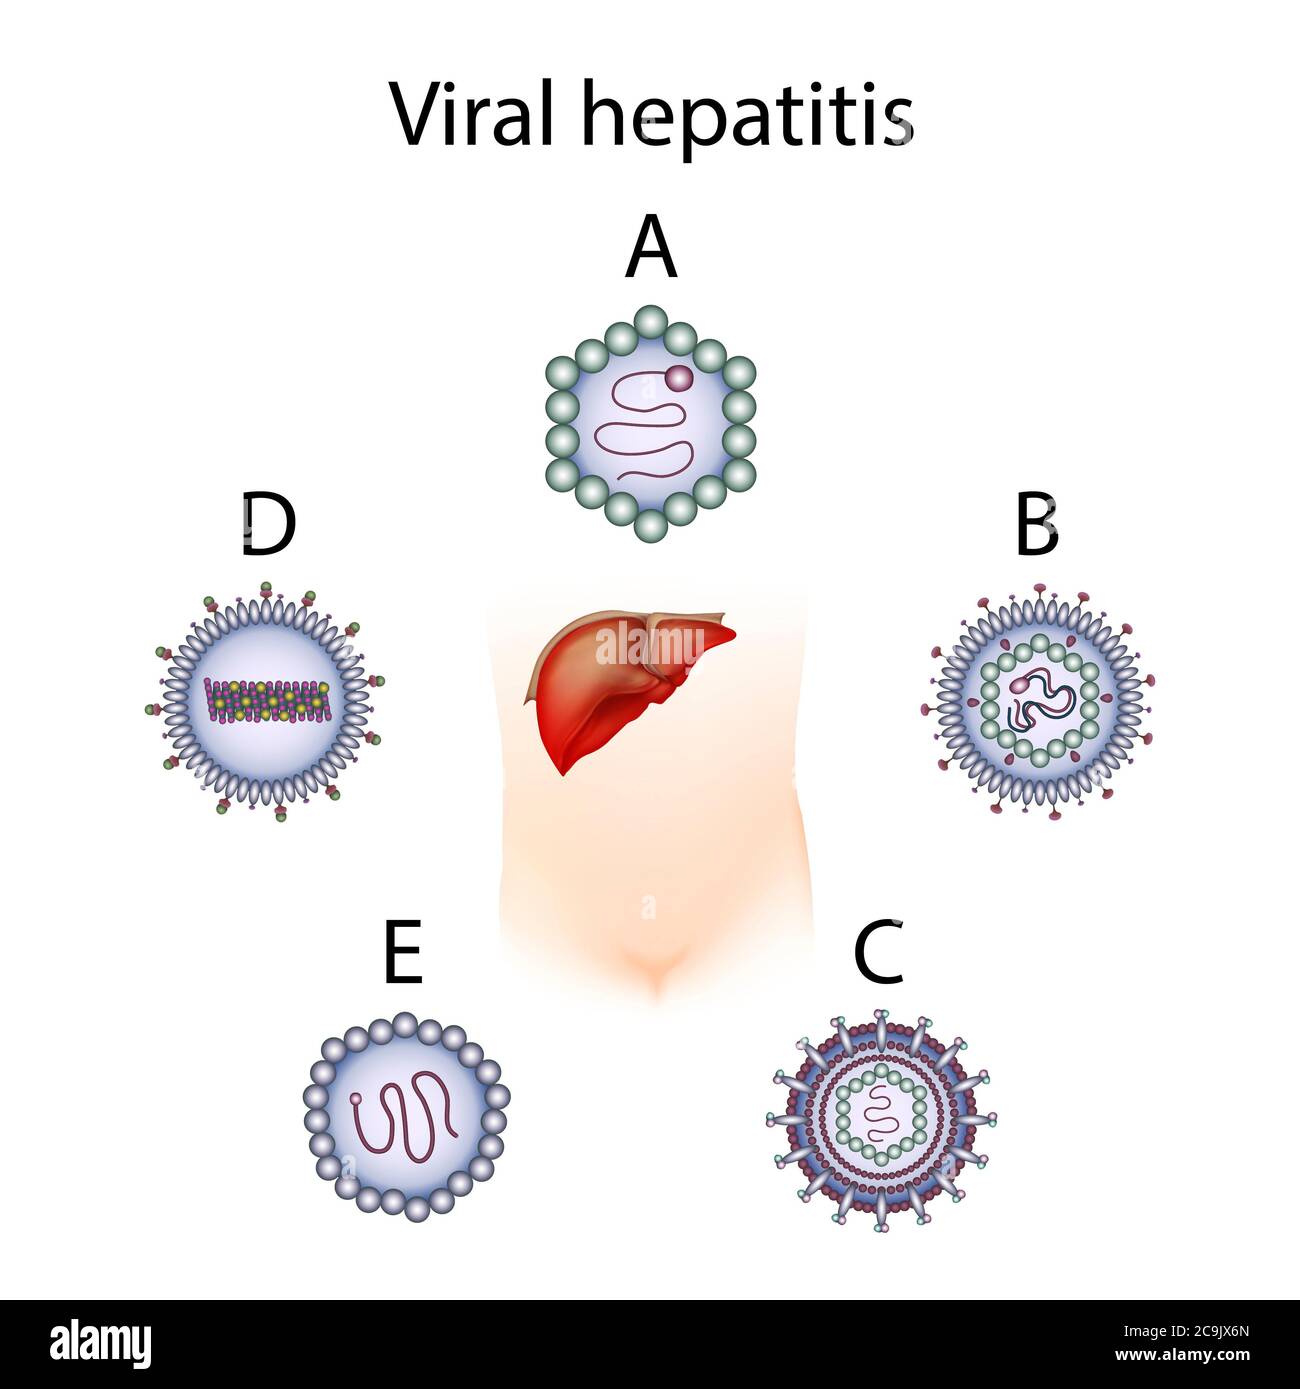 История вирусных гепатитов